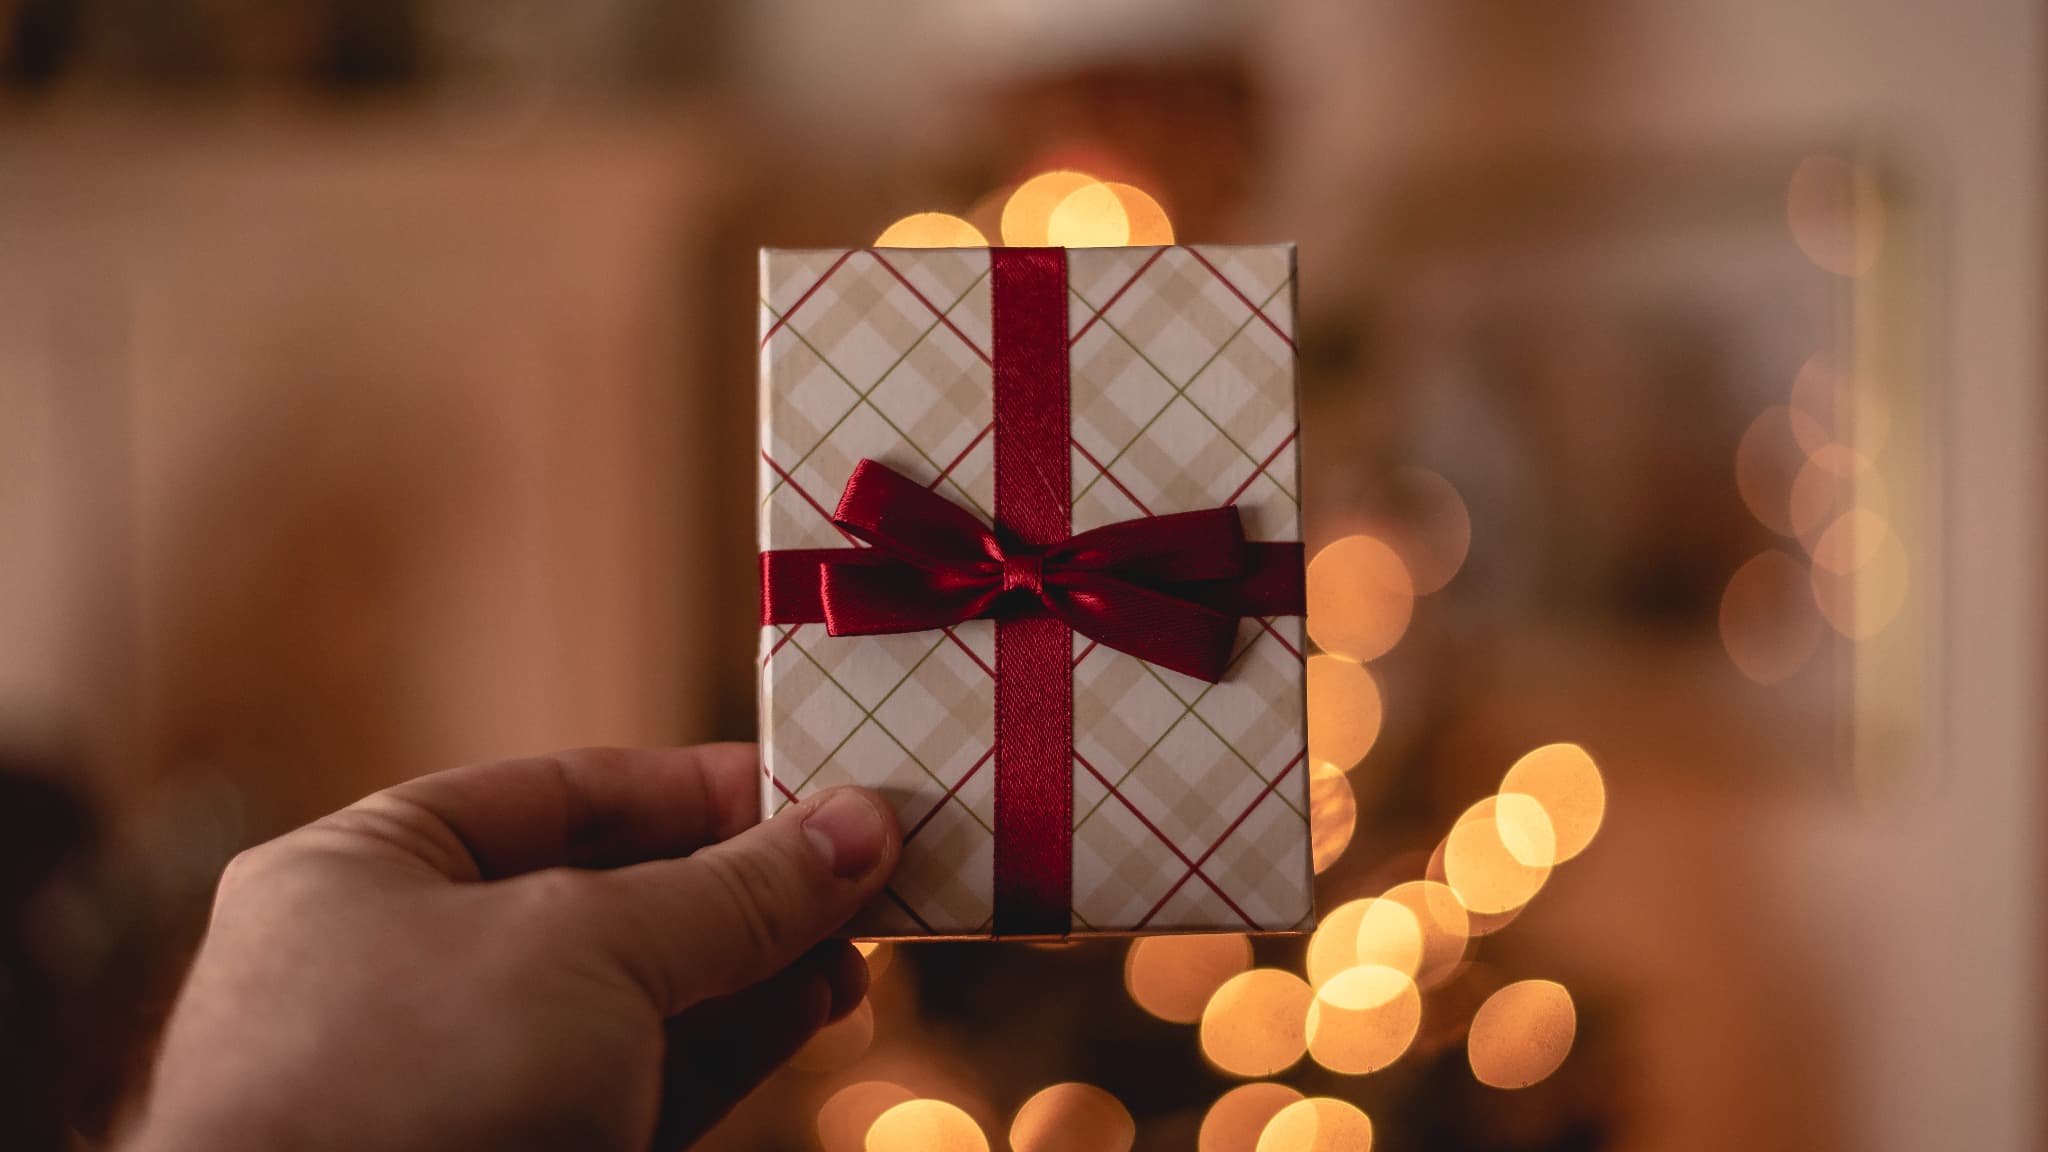 Pour Noël, chacun son coffret cadeau ! Idées cadeaux homme et femme